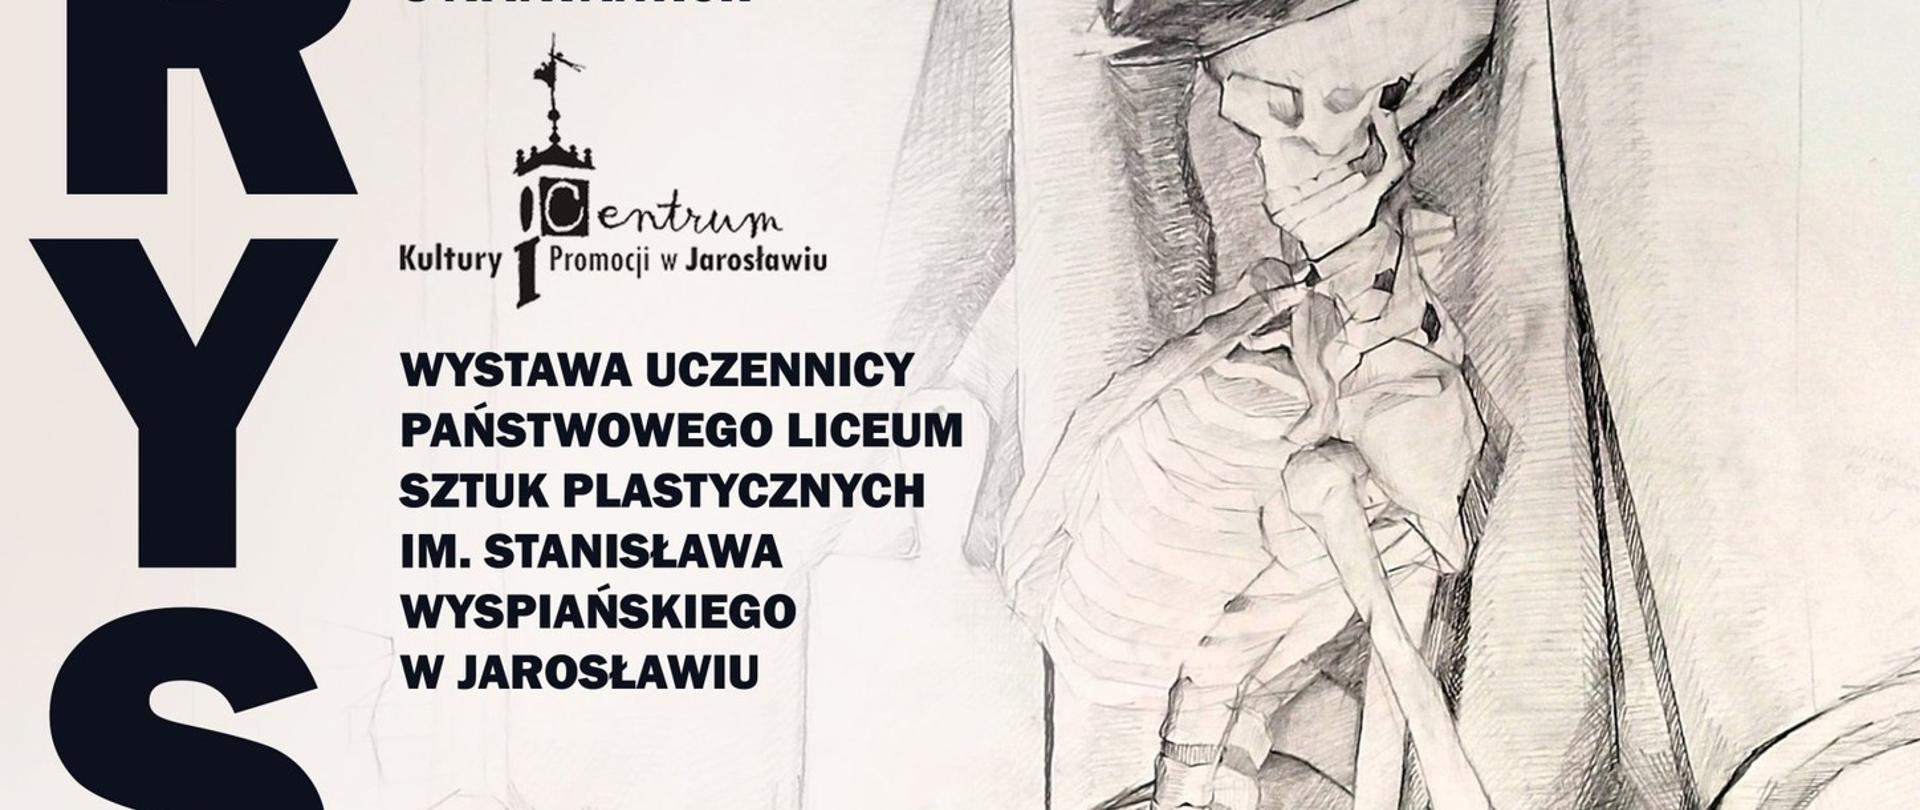 Plakat wystawy z rysunku Weroniki Dąbrowicz, na białym tle umieszczono czarno białą grafikę przedstawiającą ludzki szkielet siedzący na krześle. Po lewej stronie znajduje się pionowy napis RYSUNEK , góra plakatu zawiera szczegółową informację tekstową o wystawie.